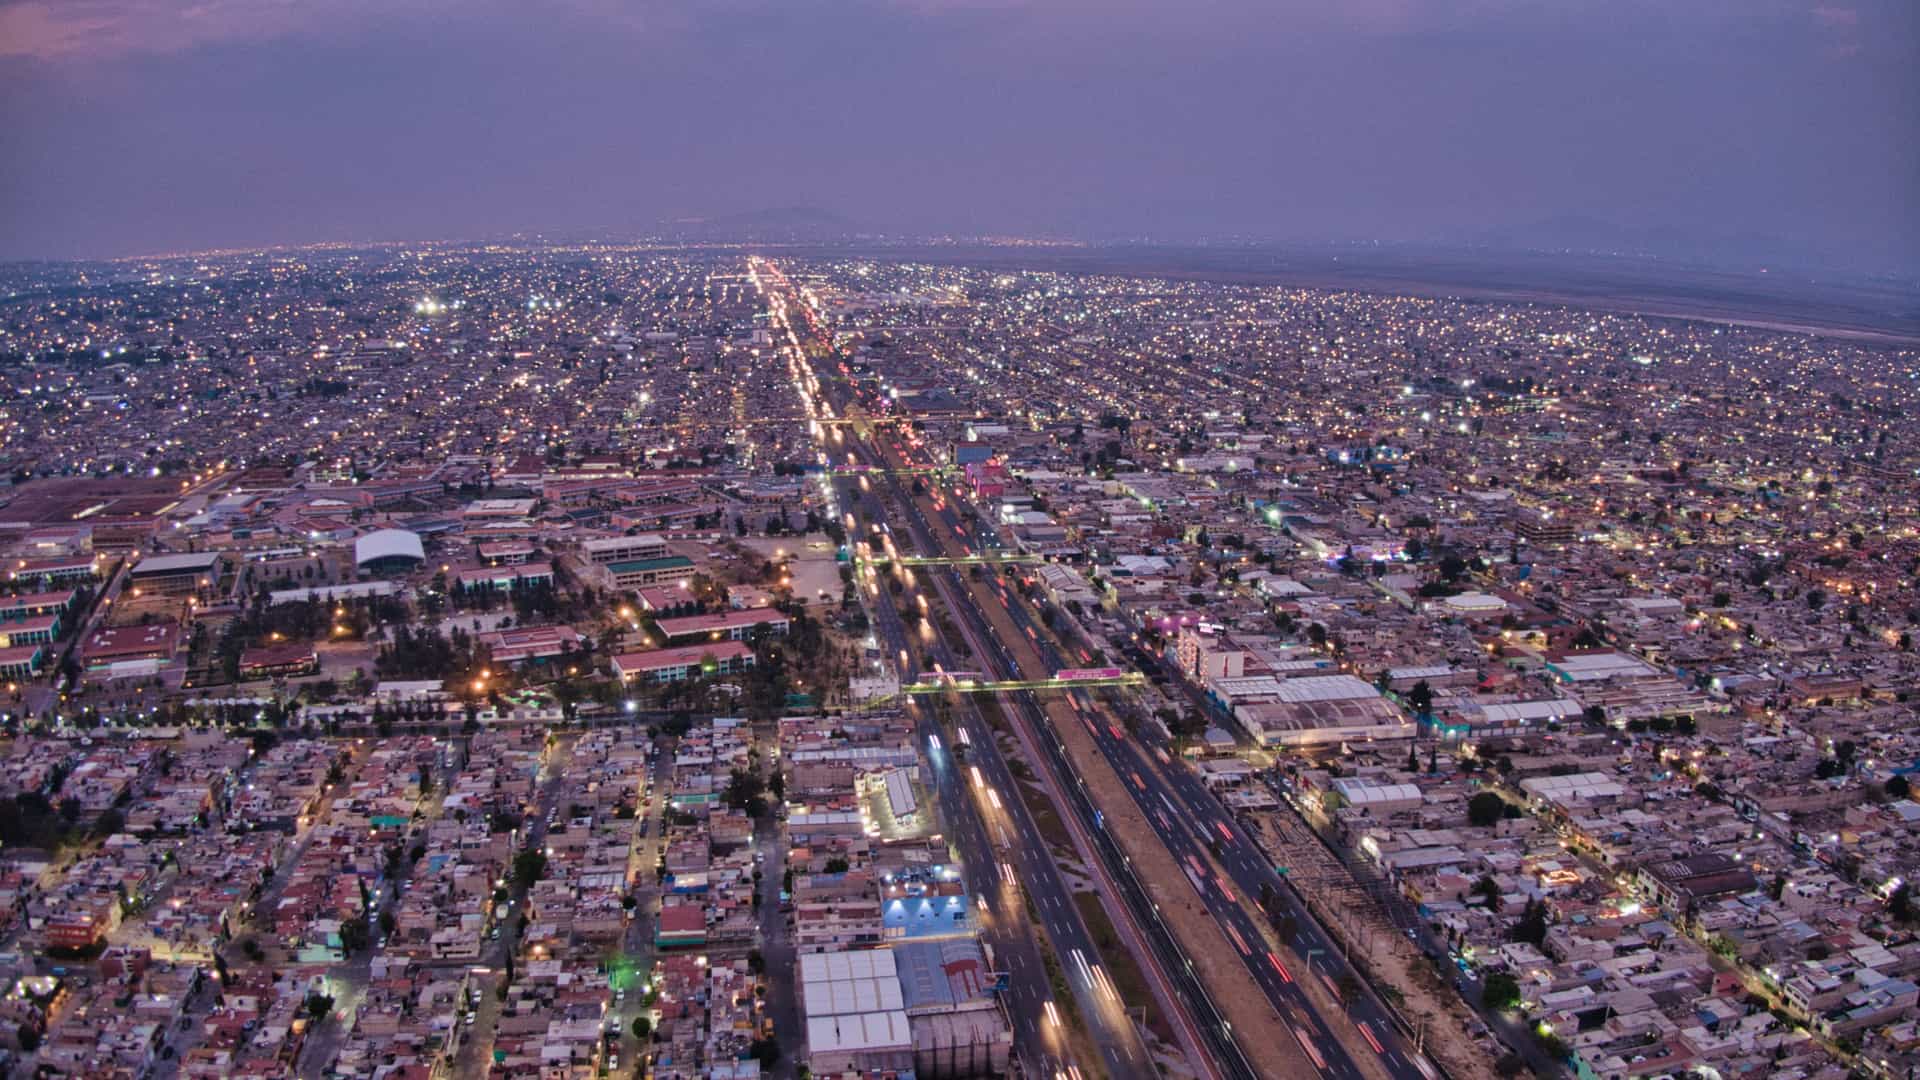 vista aerea de la ciudad de ecatepec para representar las sucursales de movistar en esa localidad